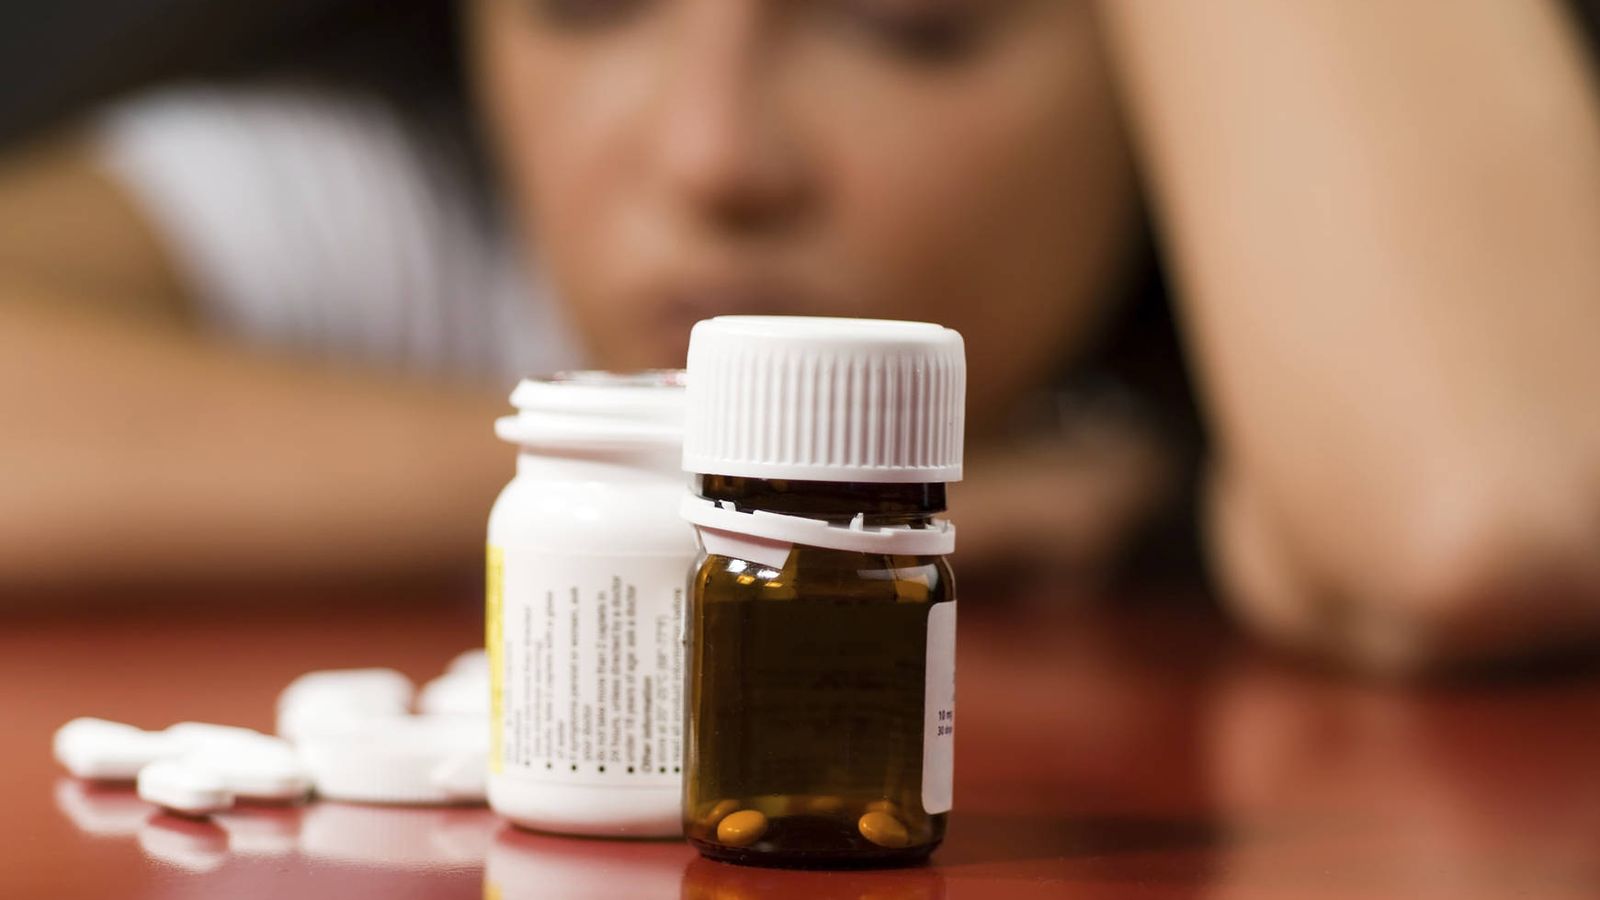 Foto: Bote de pastillas contra la depresión